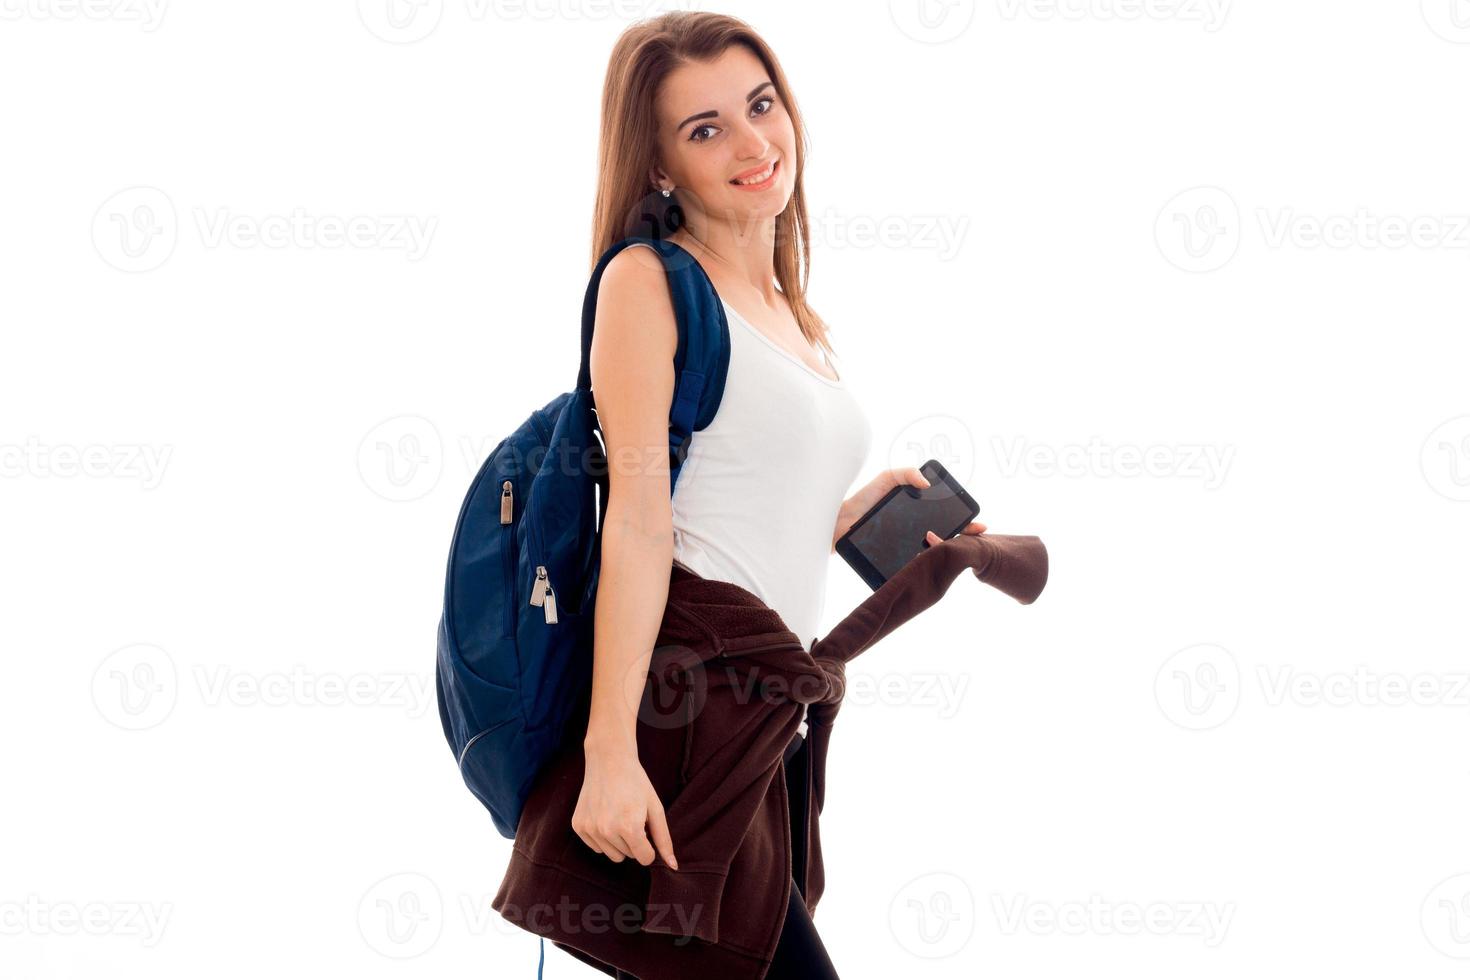 jovem estudante morena com mochila azul e telefone celular nas mãos dela posando e olhando para a câmera isolada no fundo branco foto